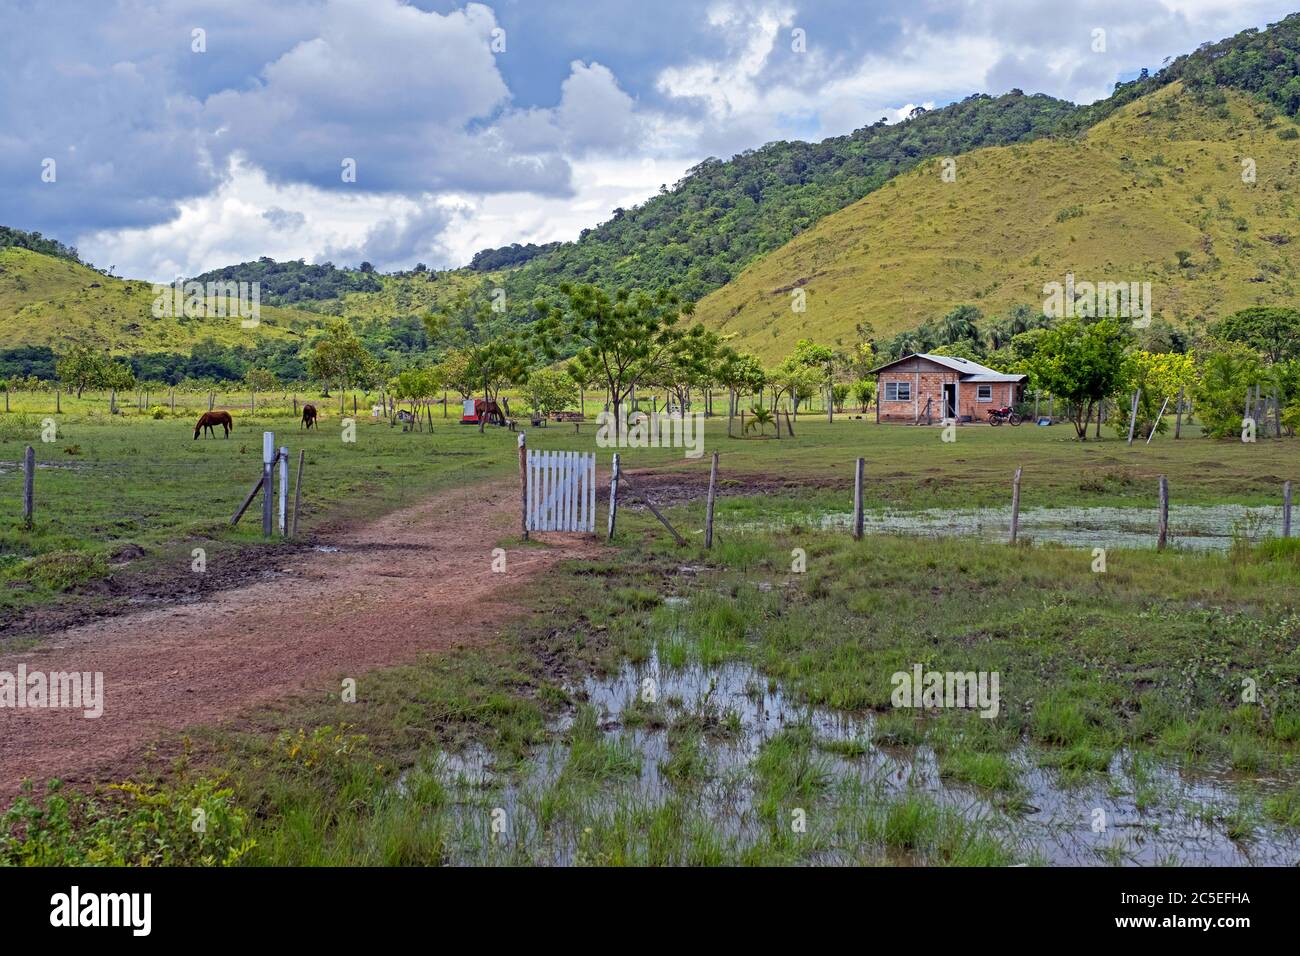 Petite ferme sur la savane le long de la route de terre Linden-Lehem reliant Lehem et Georgetown en saison des pluies, Guyana, Amérique du Sud Banque D'Images